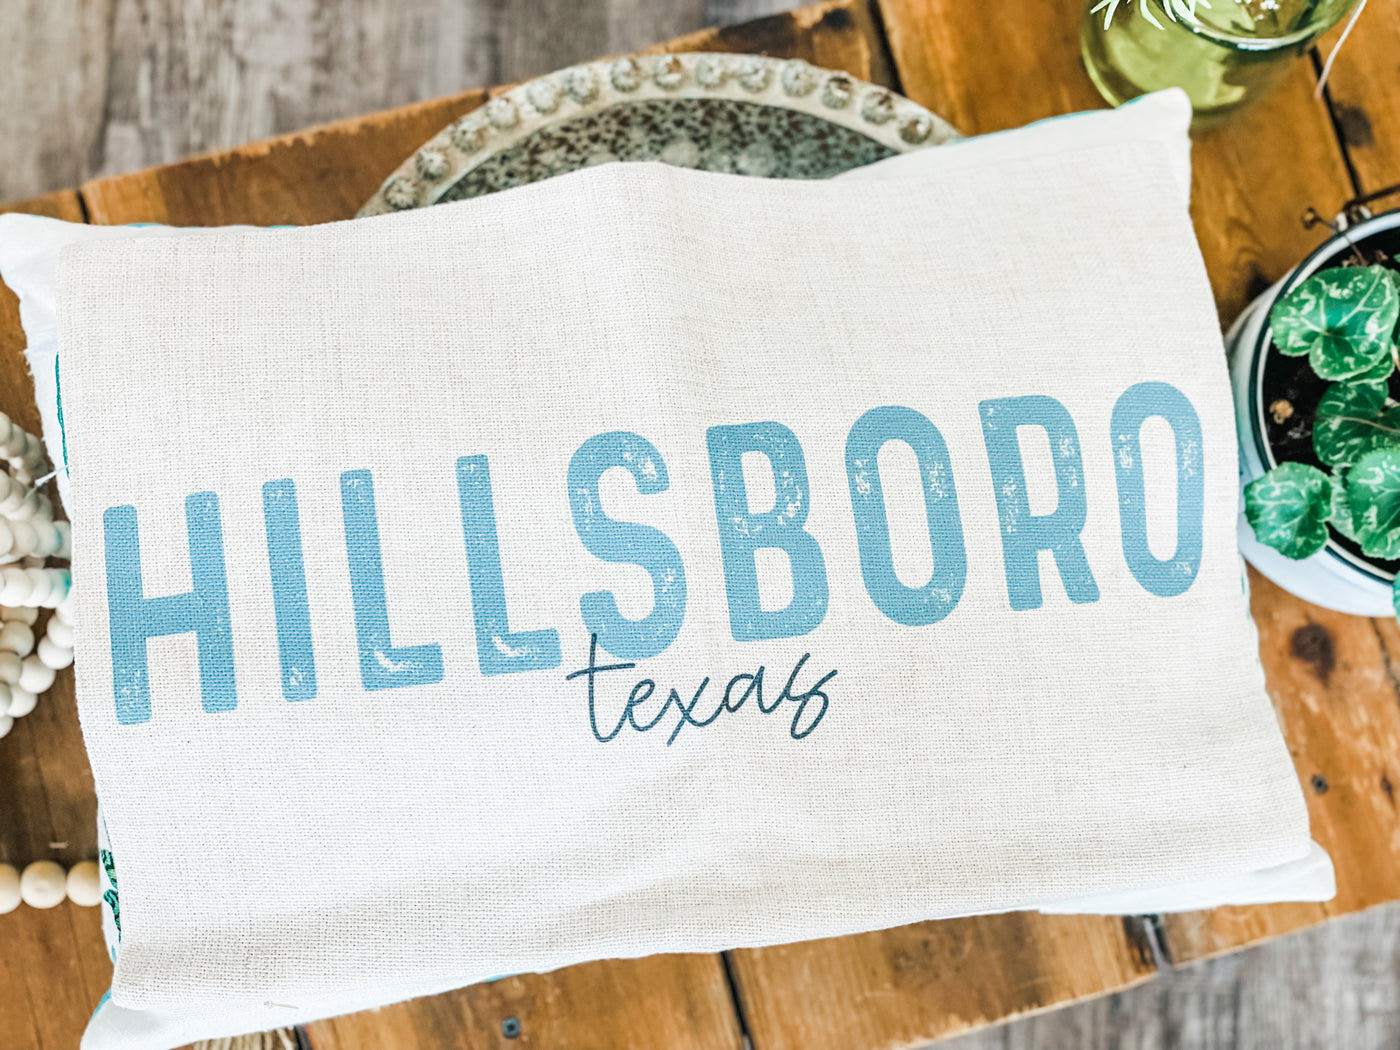 Hillsboro, Texas Lumbar Throw Pillow Cover